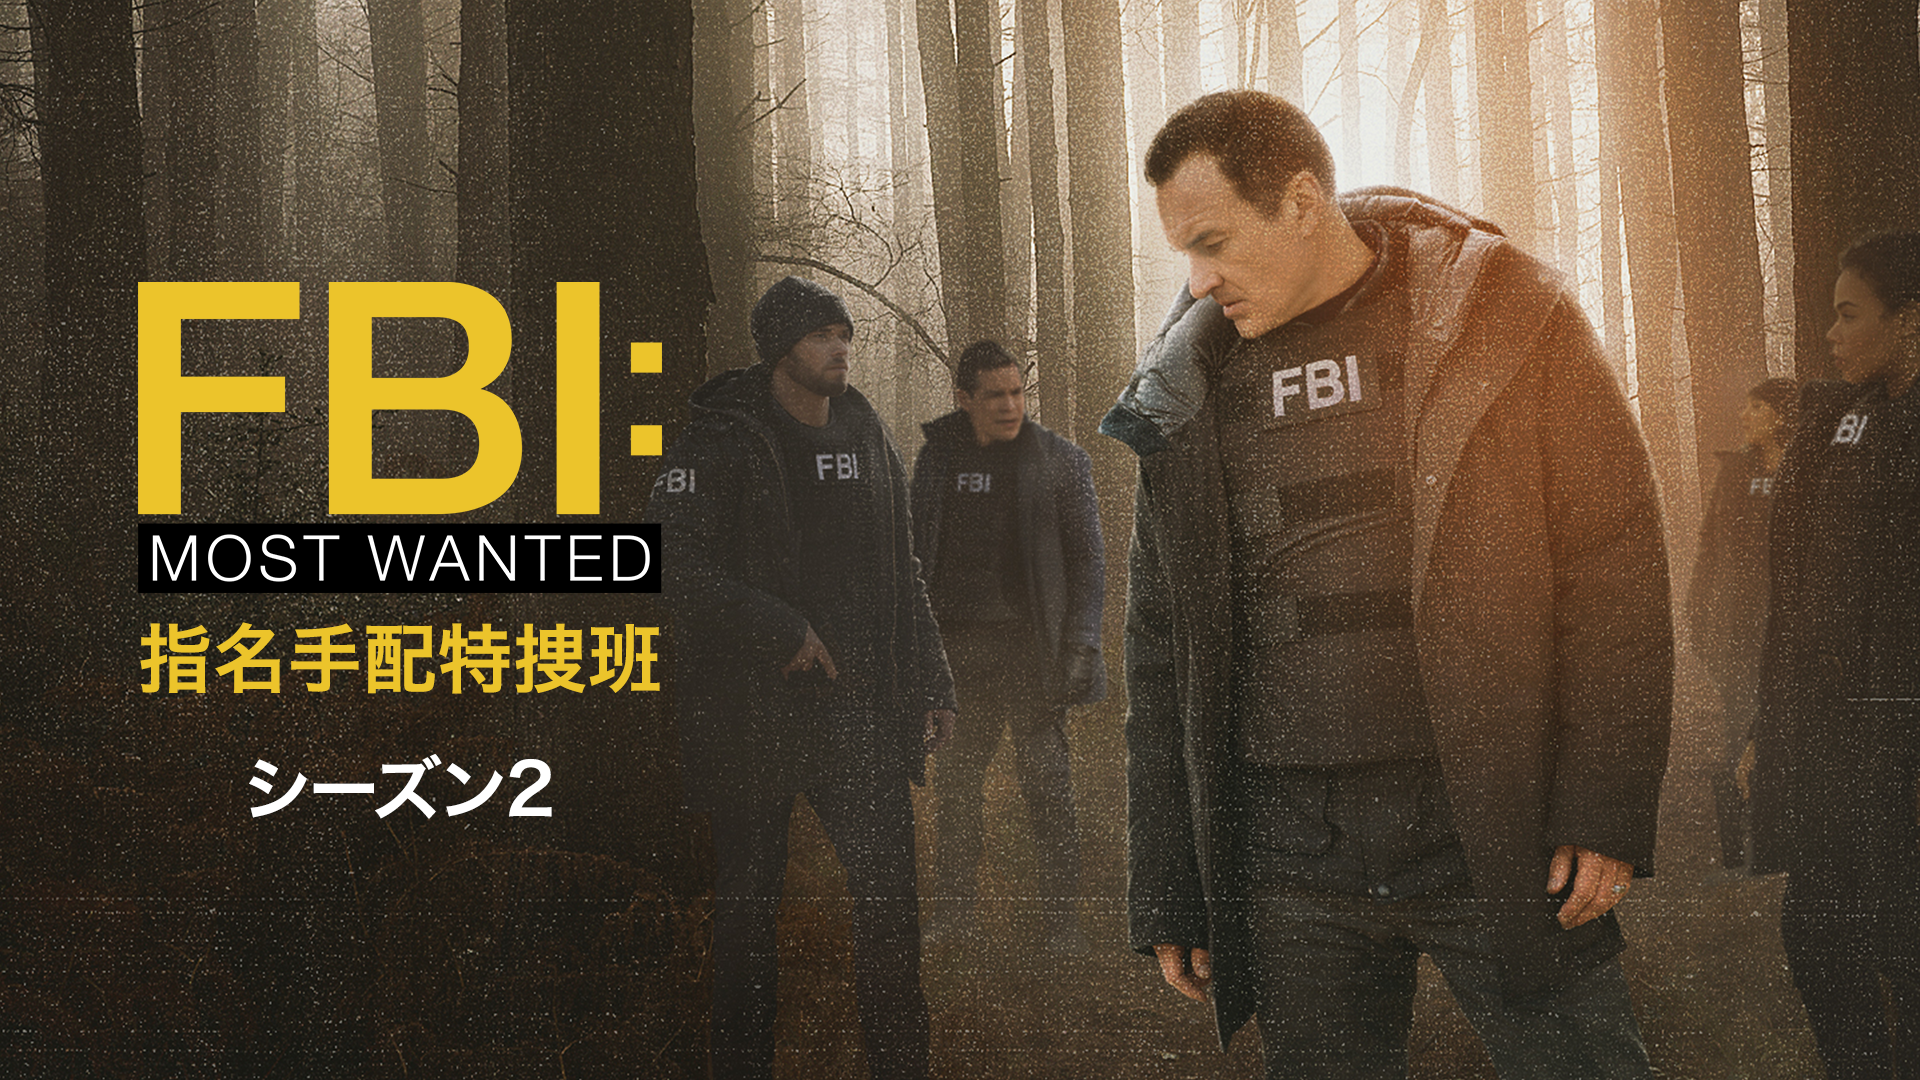 FBI：Most Wanted～指名手配特捜班～ シーズン2(海外ドラマ / 2020) - 動画配信 | U-NEXT 31日間無料トライアル